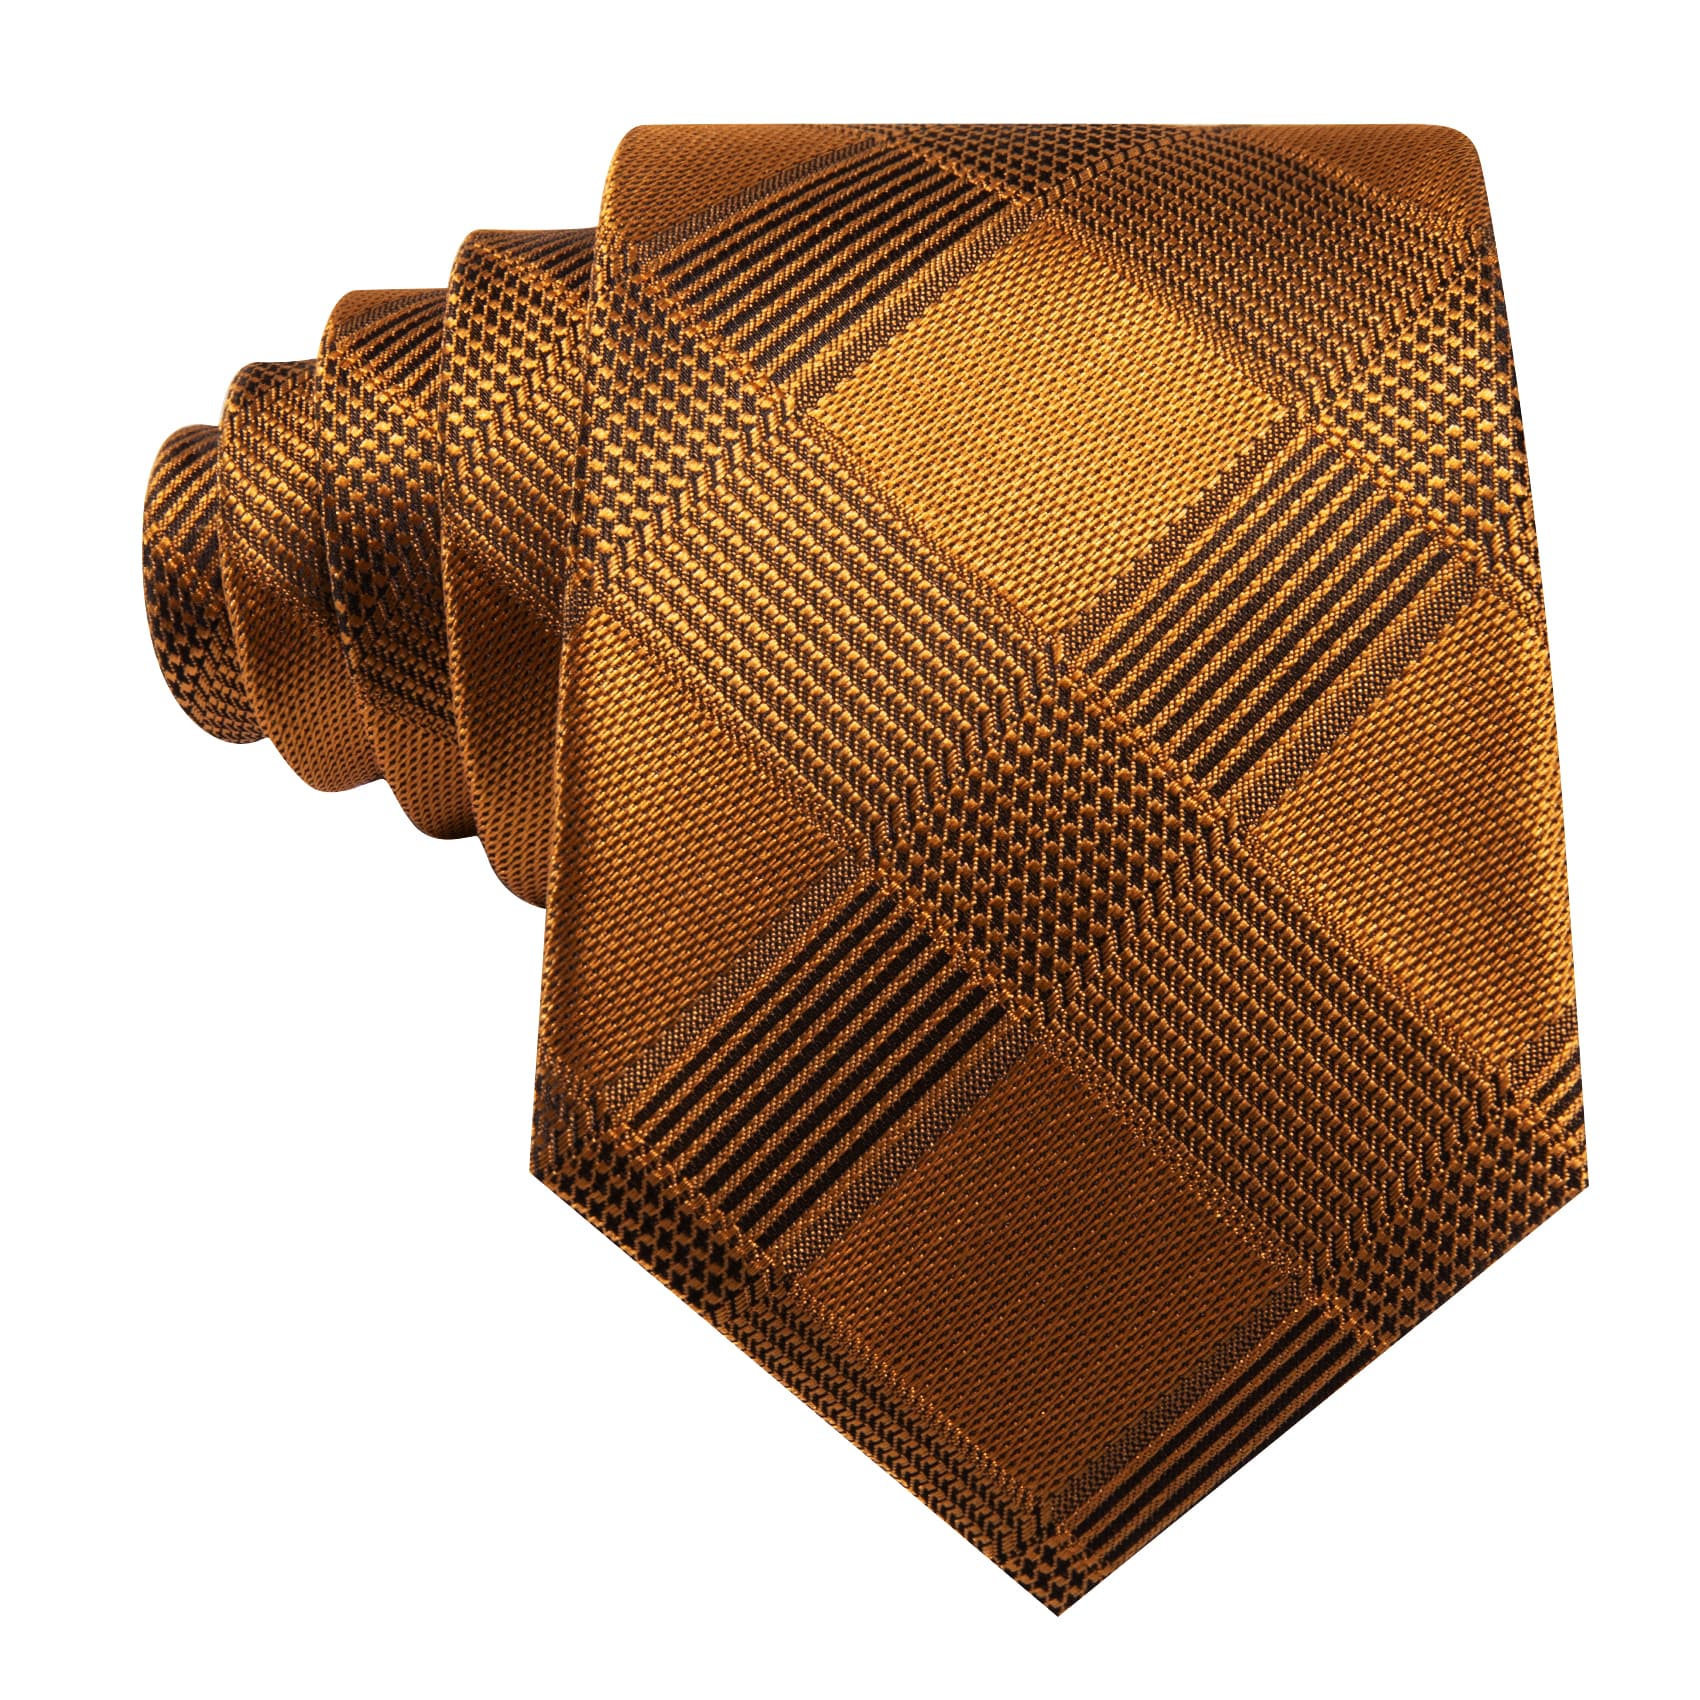 Plaid Tie Gold Black Checkered Necktie and Cufflink Set